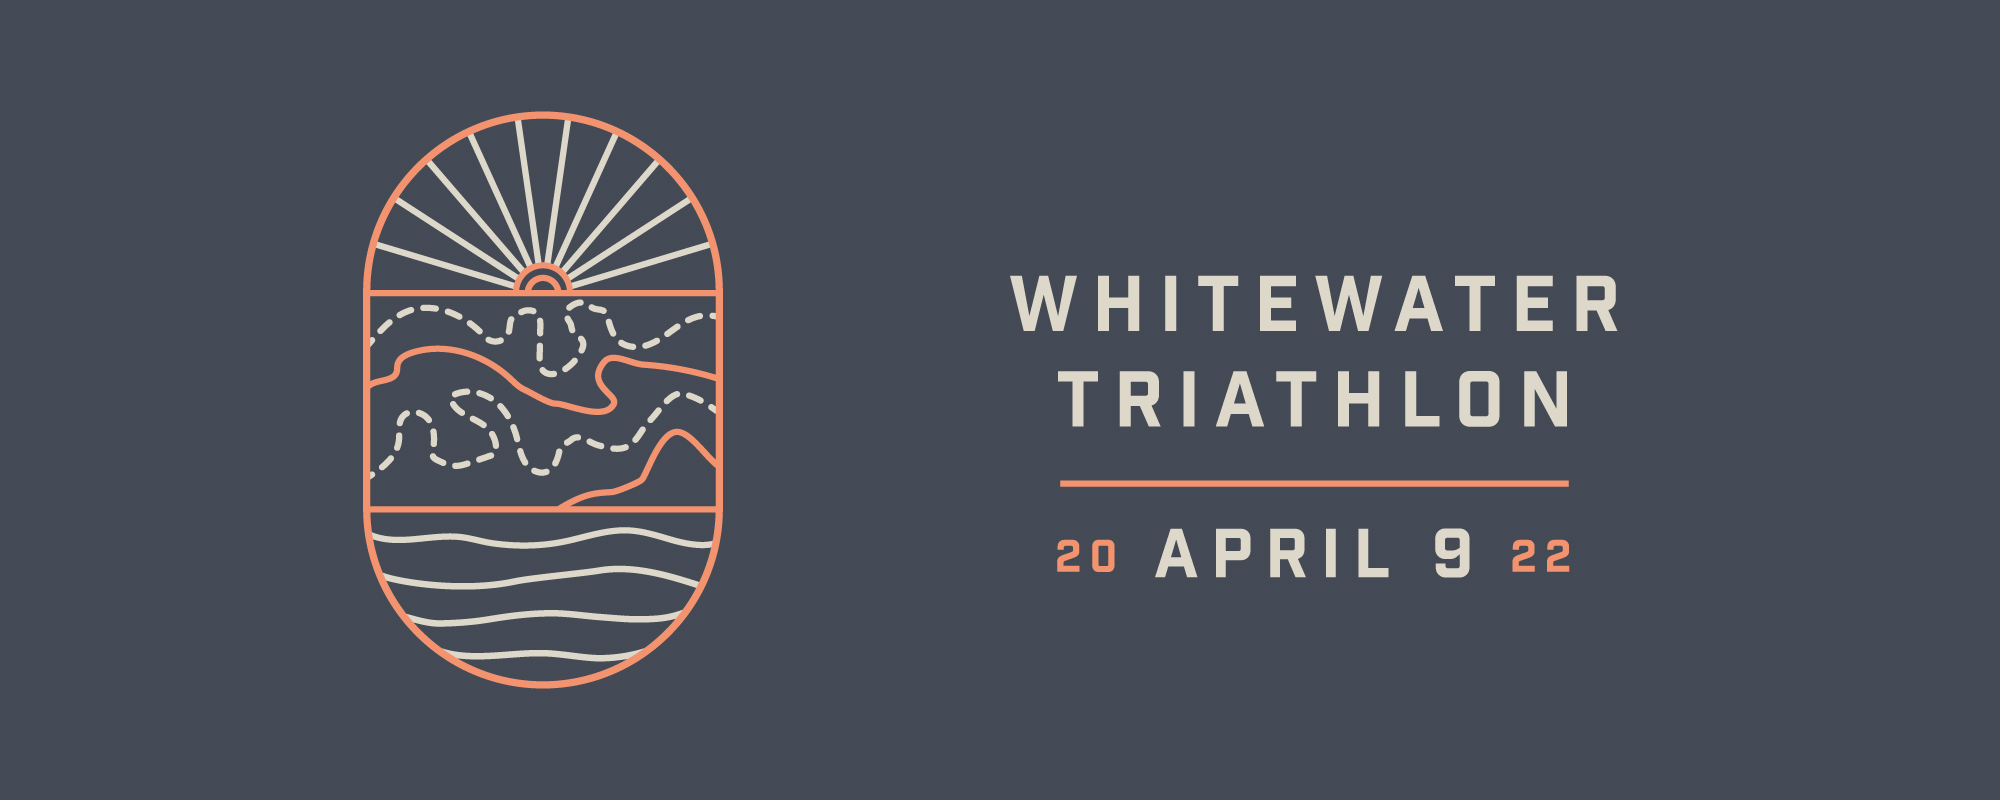 2022 Whitewater Triathlon